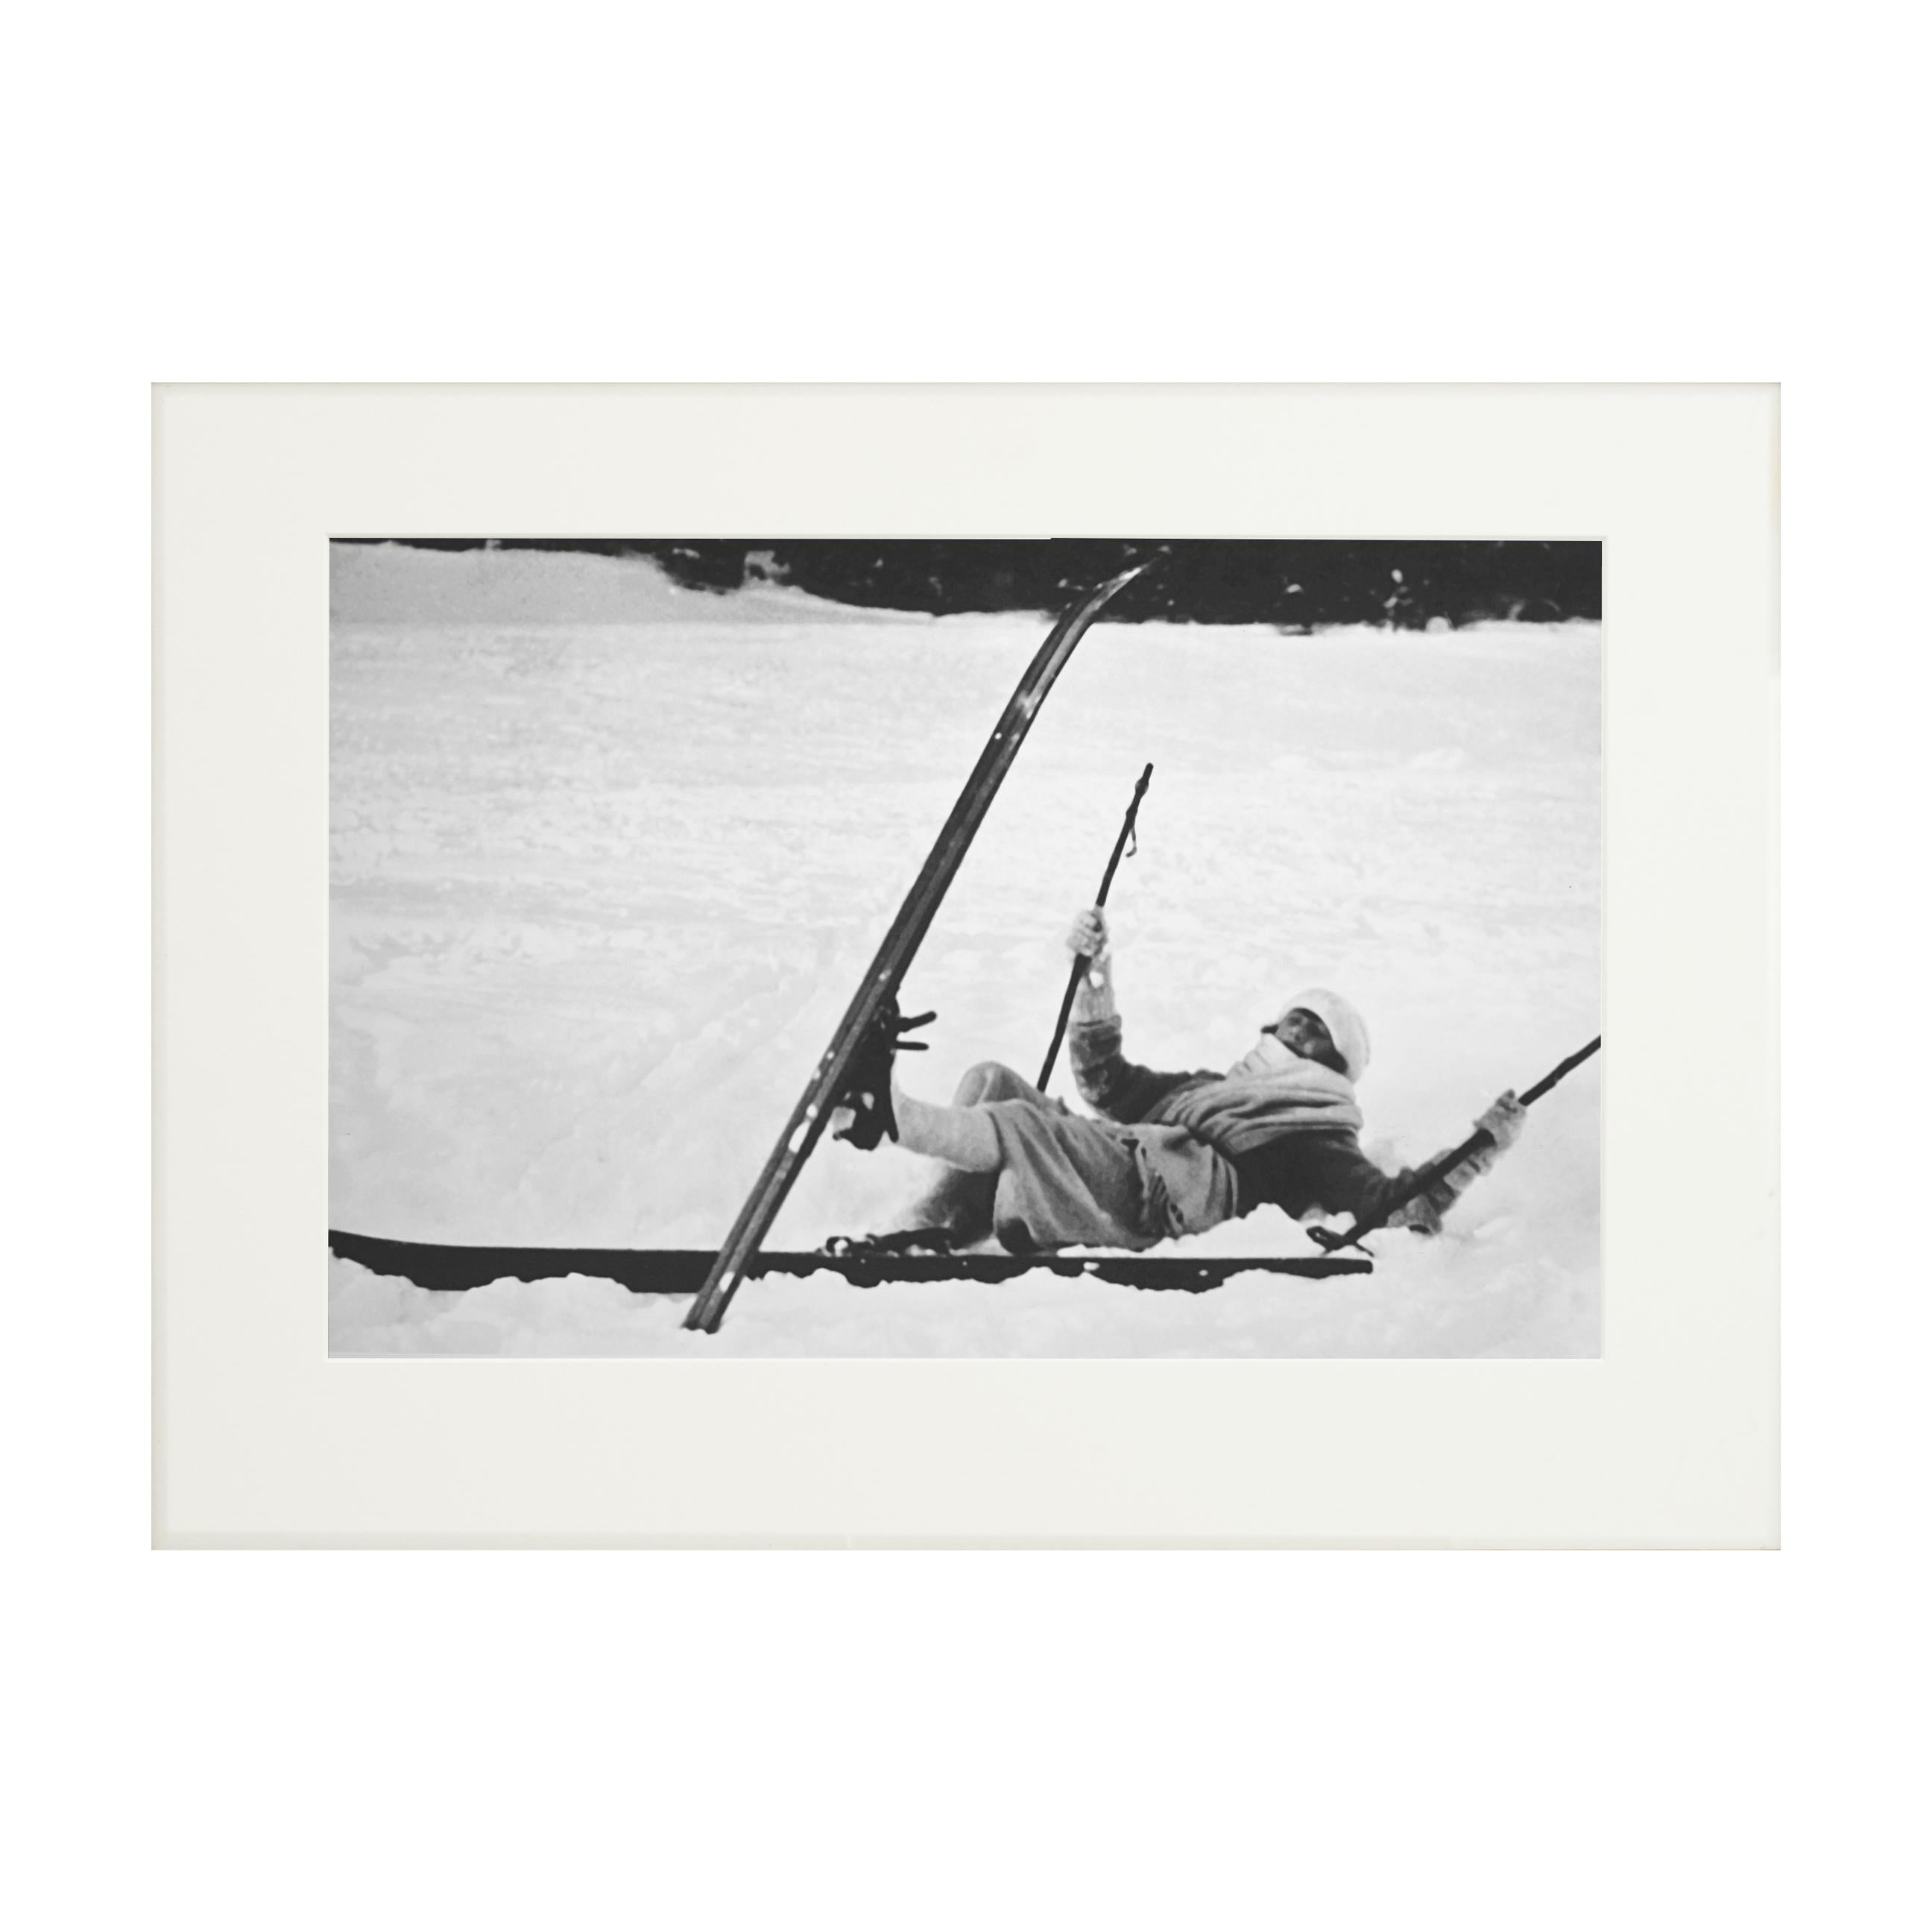 Sporting Art Photographie de ski alpin encadrée de style vintage, Opps en vente